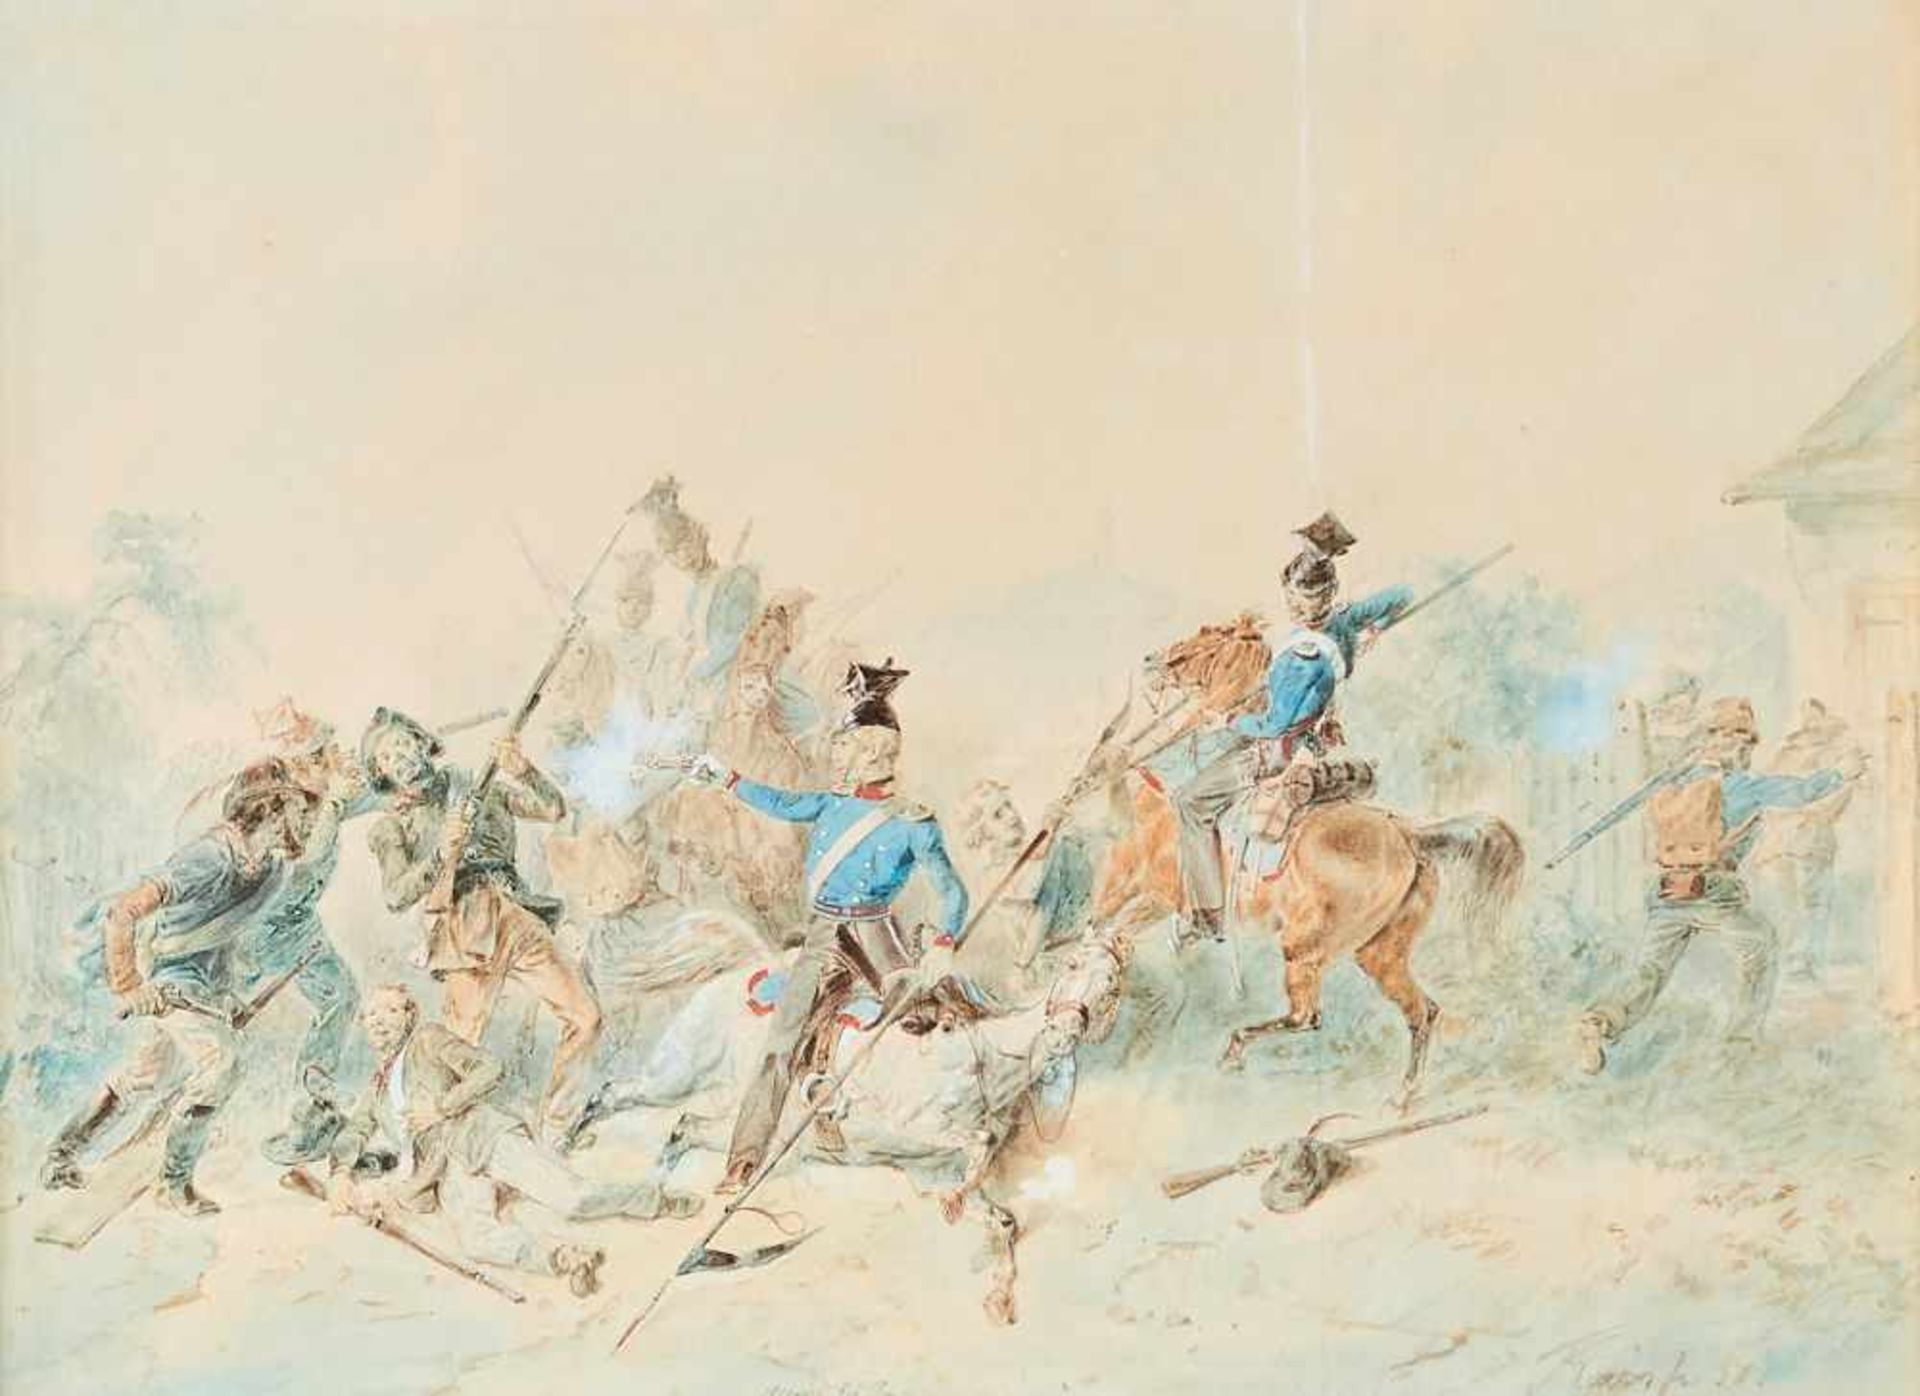 Schlacht bei DurlachFriederich Kaiser, (1815-1890)Links unten signiert "Kaiser fec. 50" sowie mittig